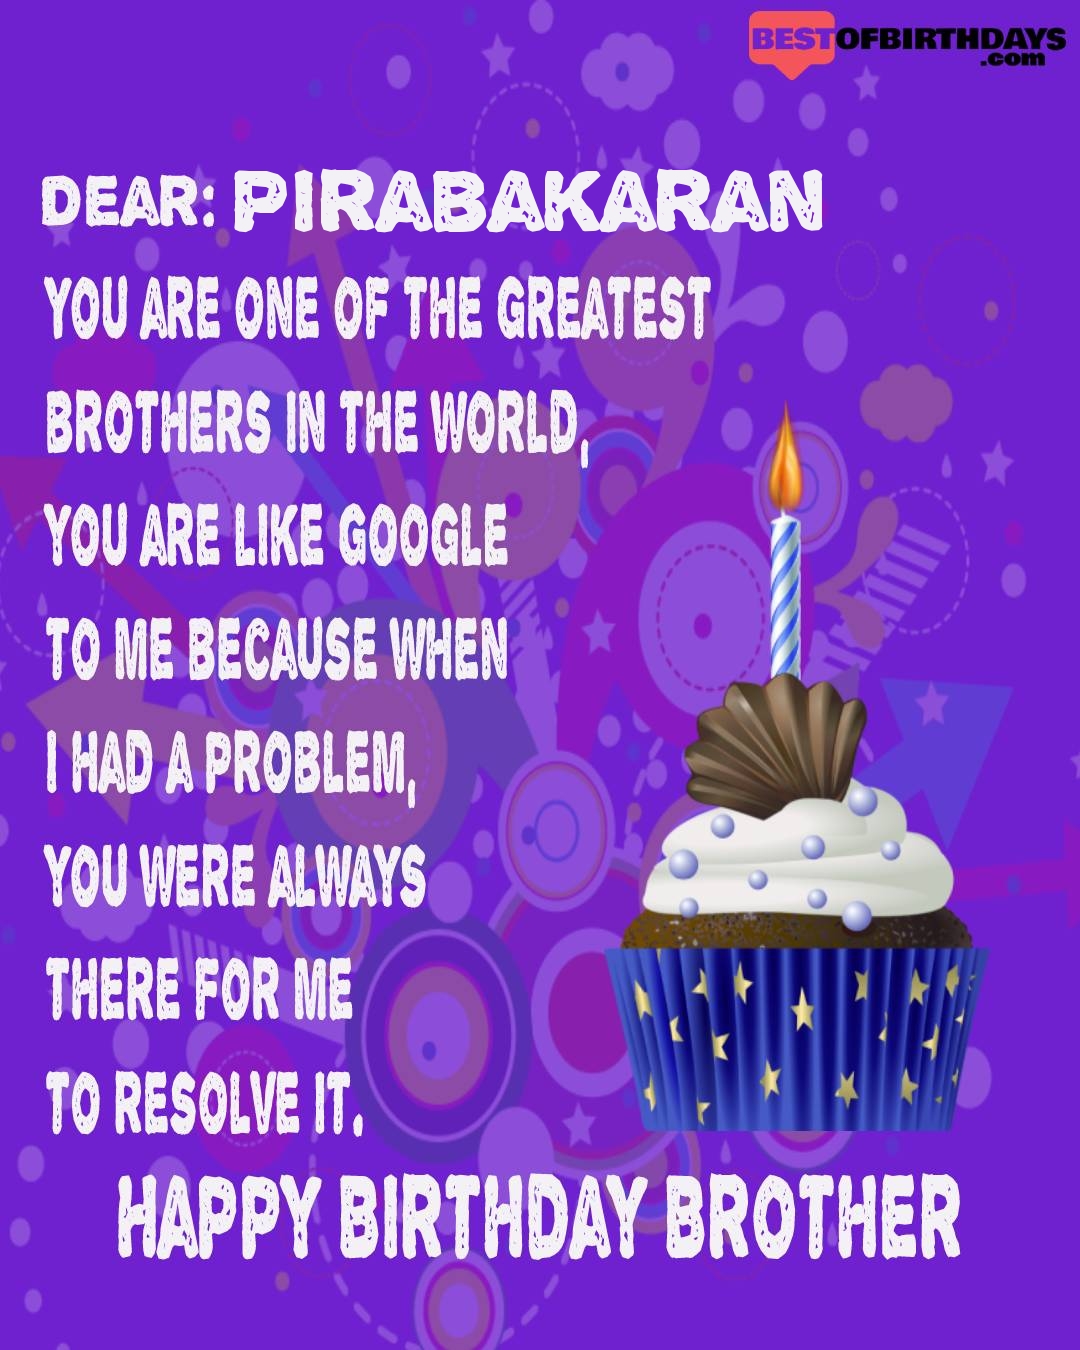 Happy birthday pirabakaran bhai brother bro